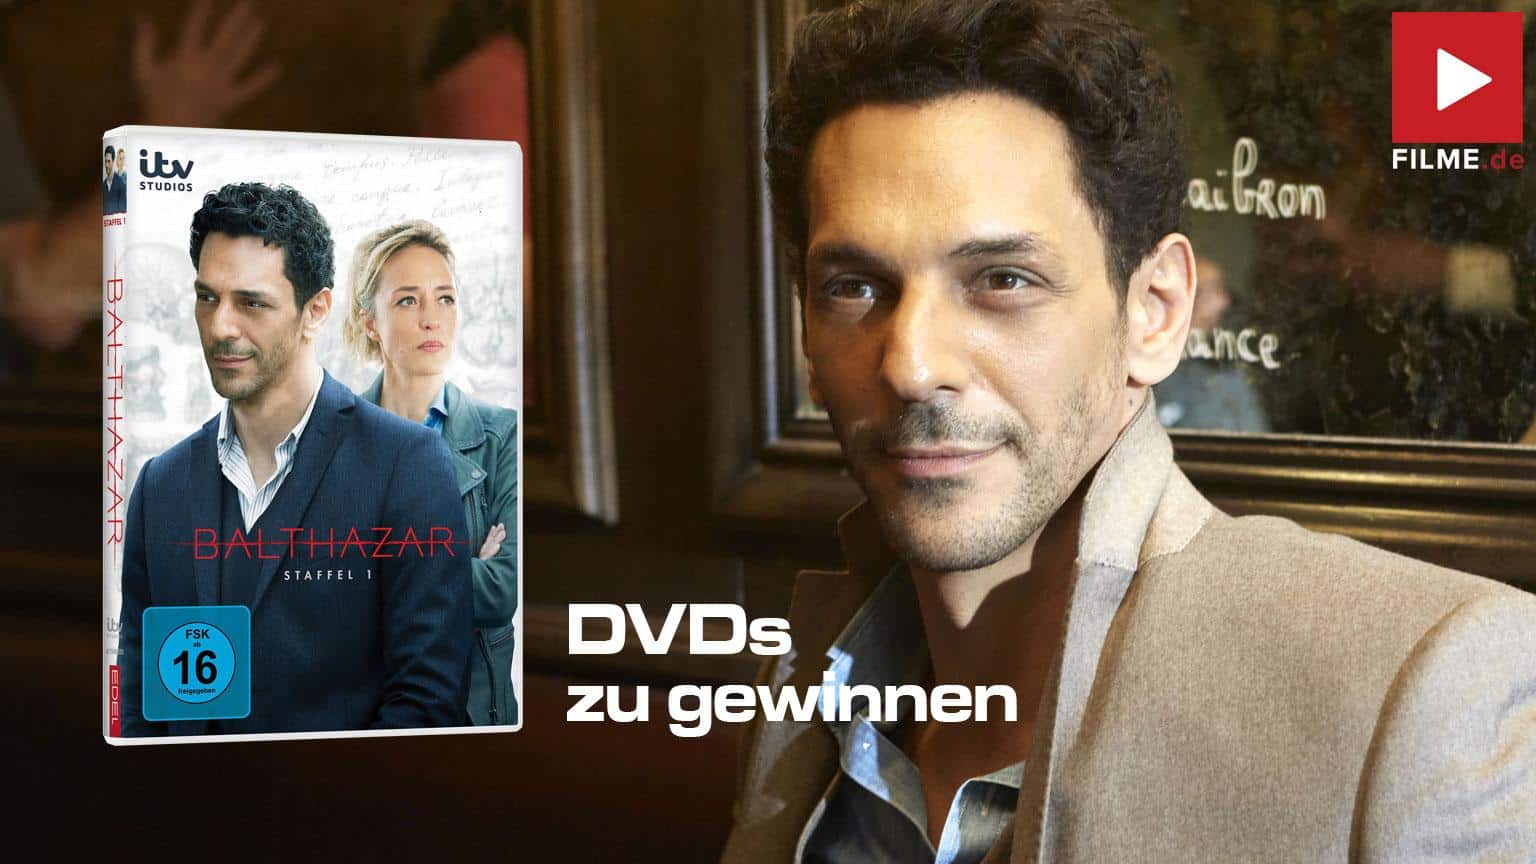 Balthazar Staffel 1 Gewinnspiel gewinnen Blu-ray DVD shop kaufen Artikelbild